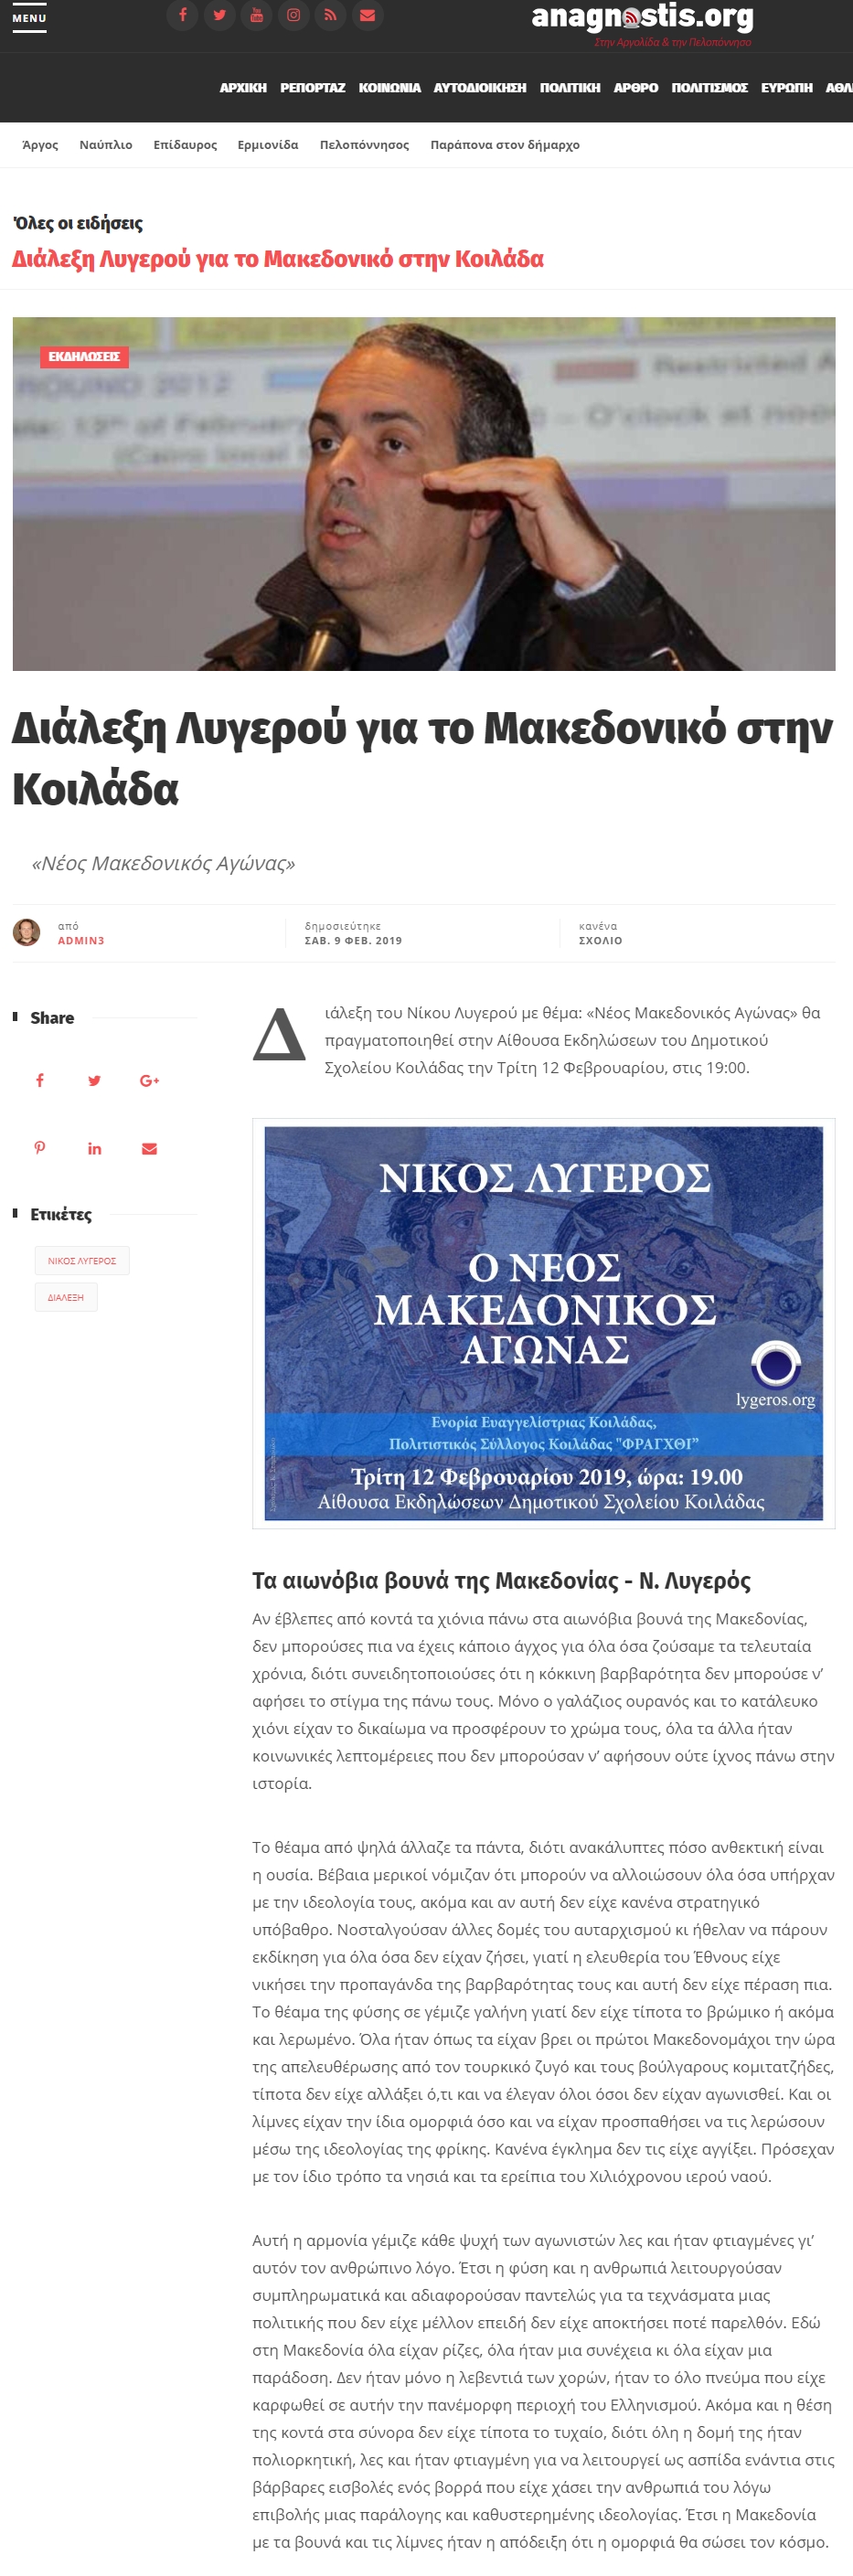 Διάλεξη Λυγερού για το Μακεδονικό στην Κοιλάδα, anagnostis, 09/02/2019 - Publication